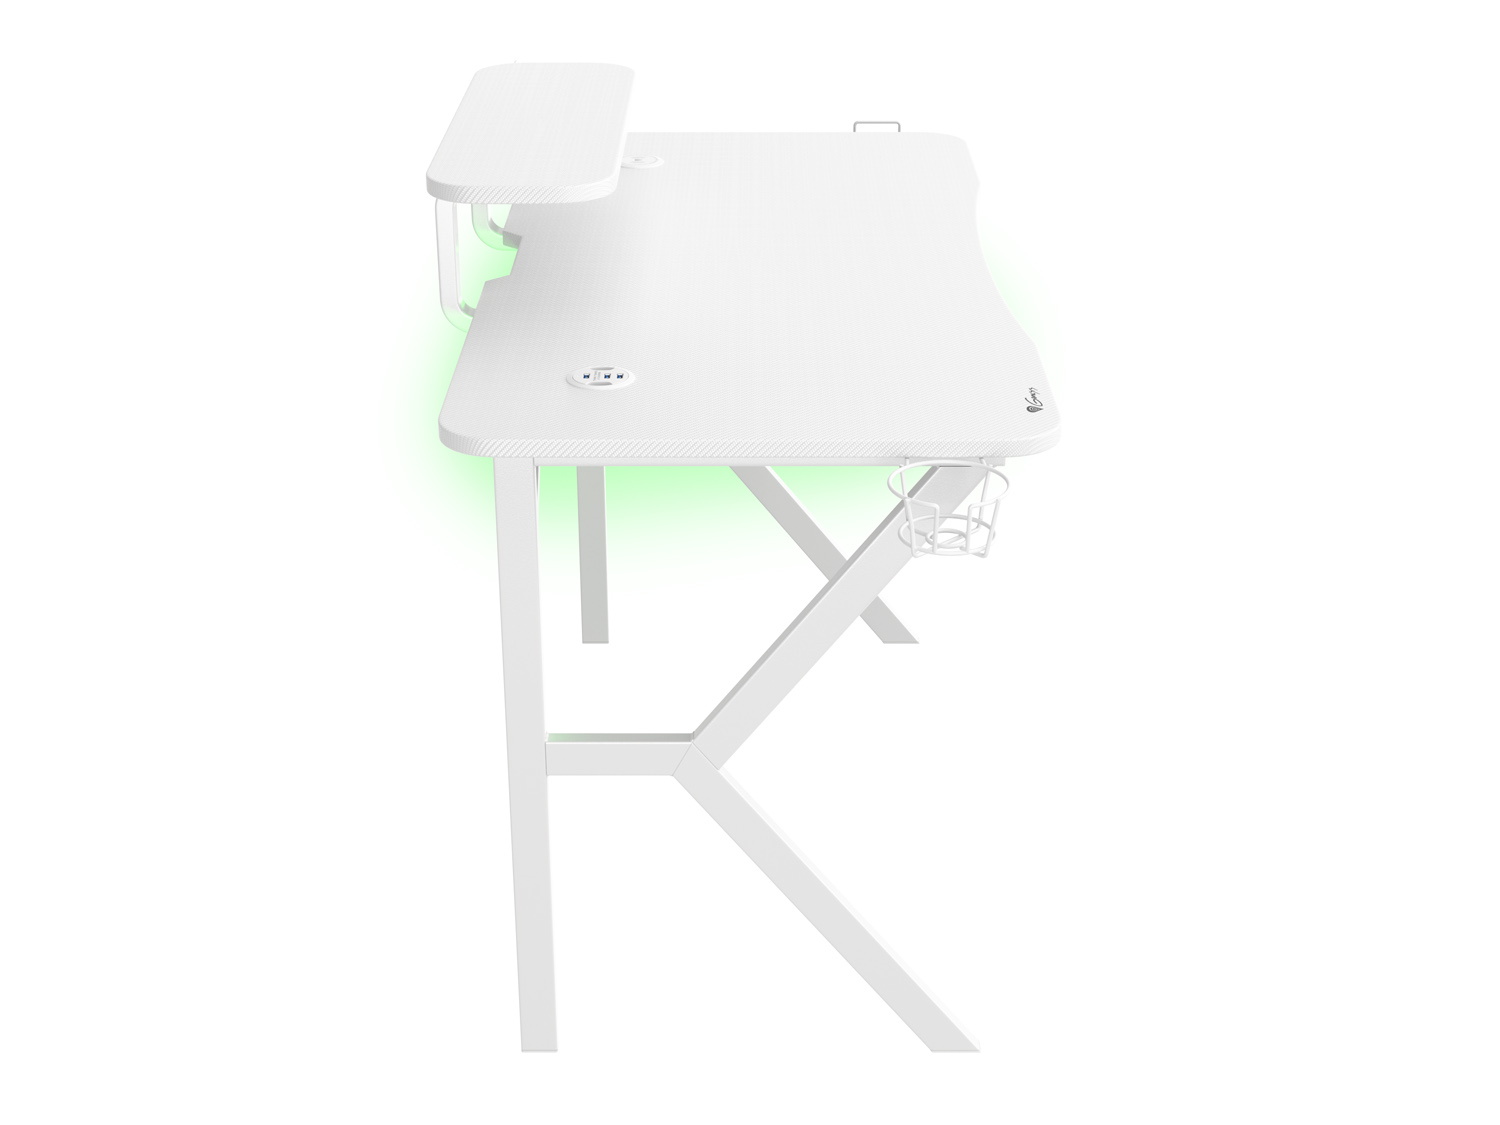 Obrázek Genesis herní stůl Holm 320, RGB podsvícení, bílý, 120x60cm, 3xUSB 3.0, bezdrátová nabíječka